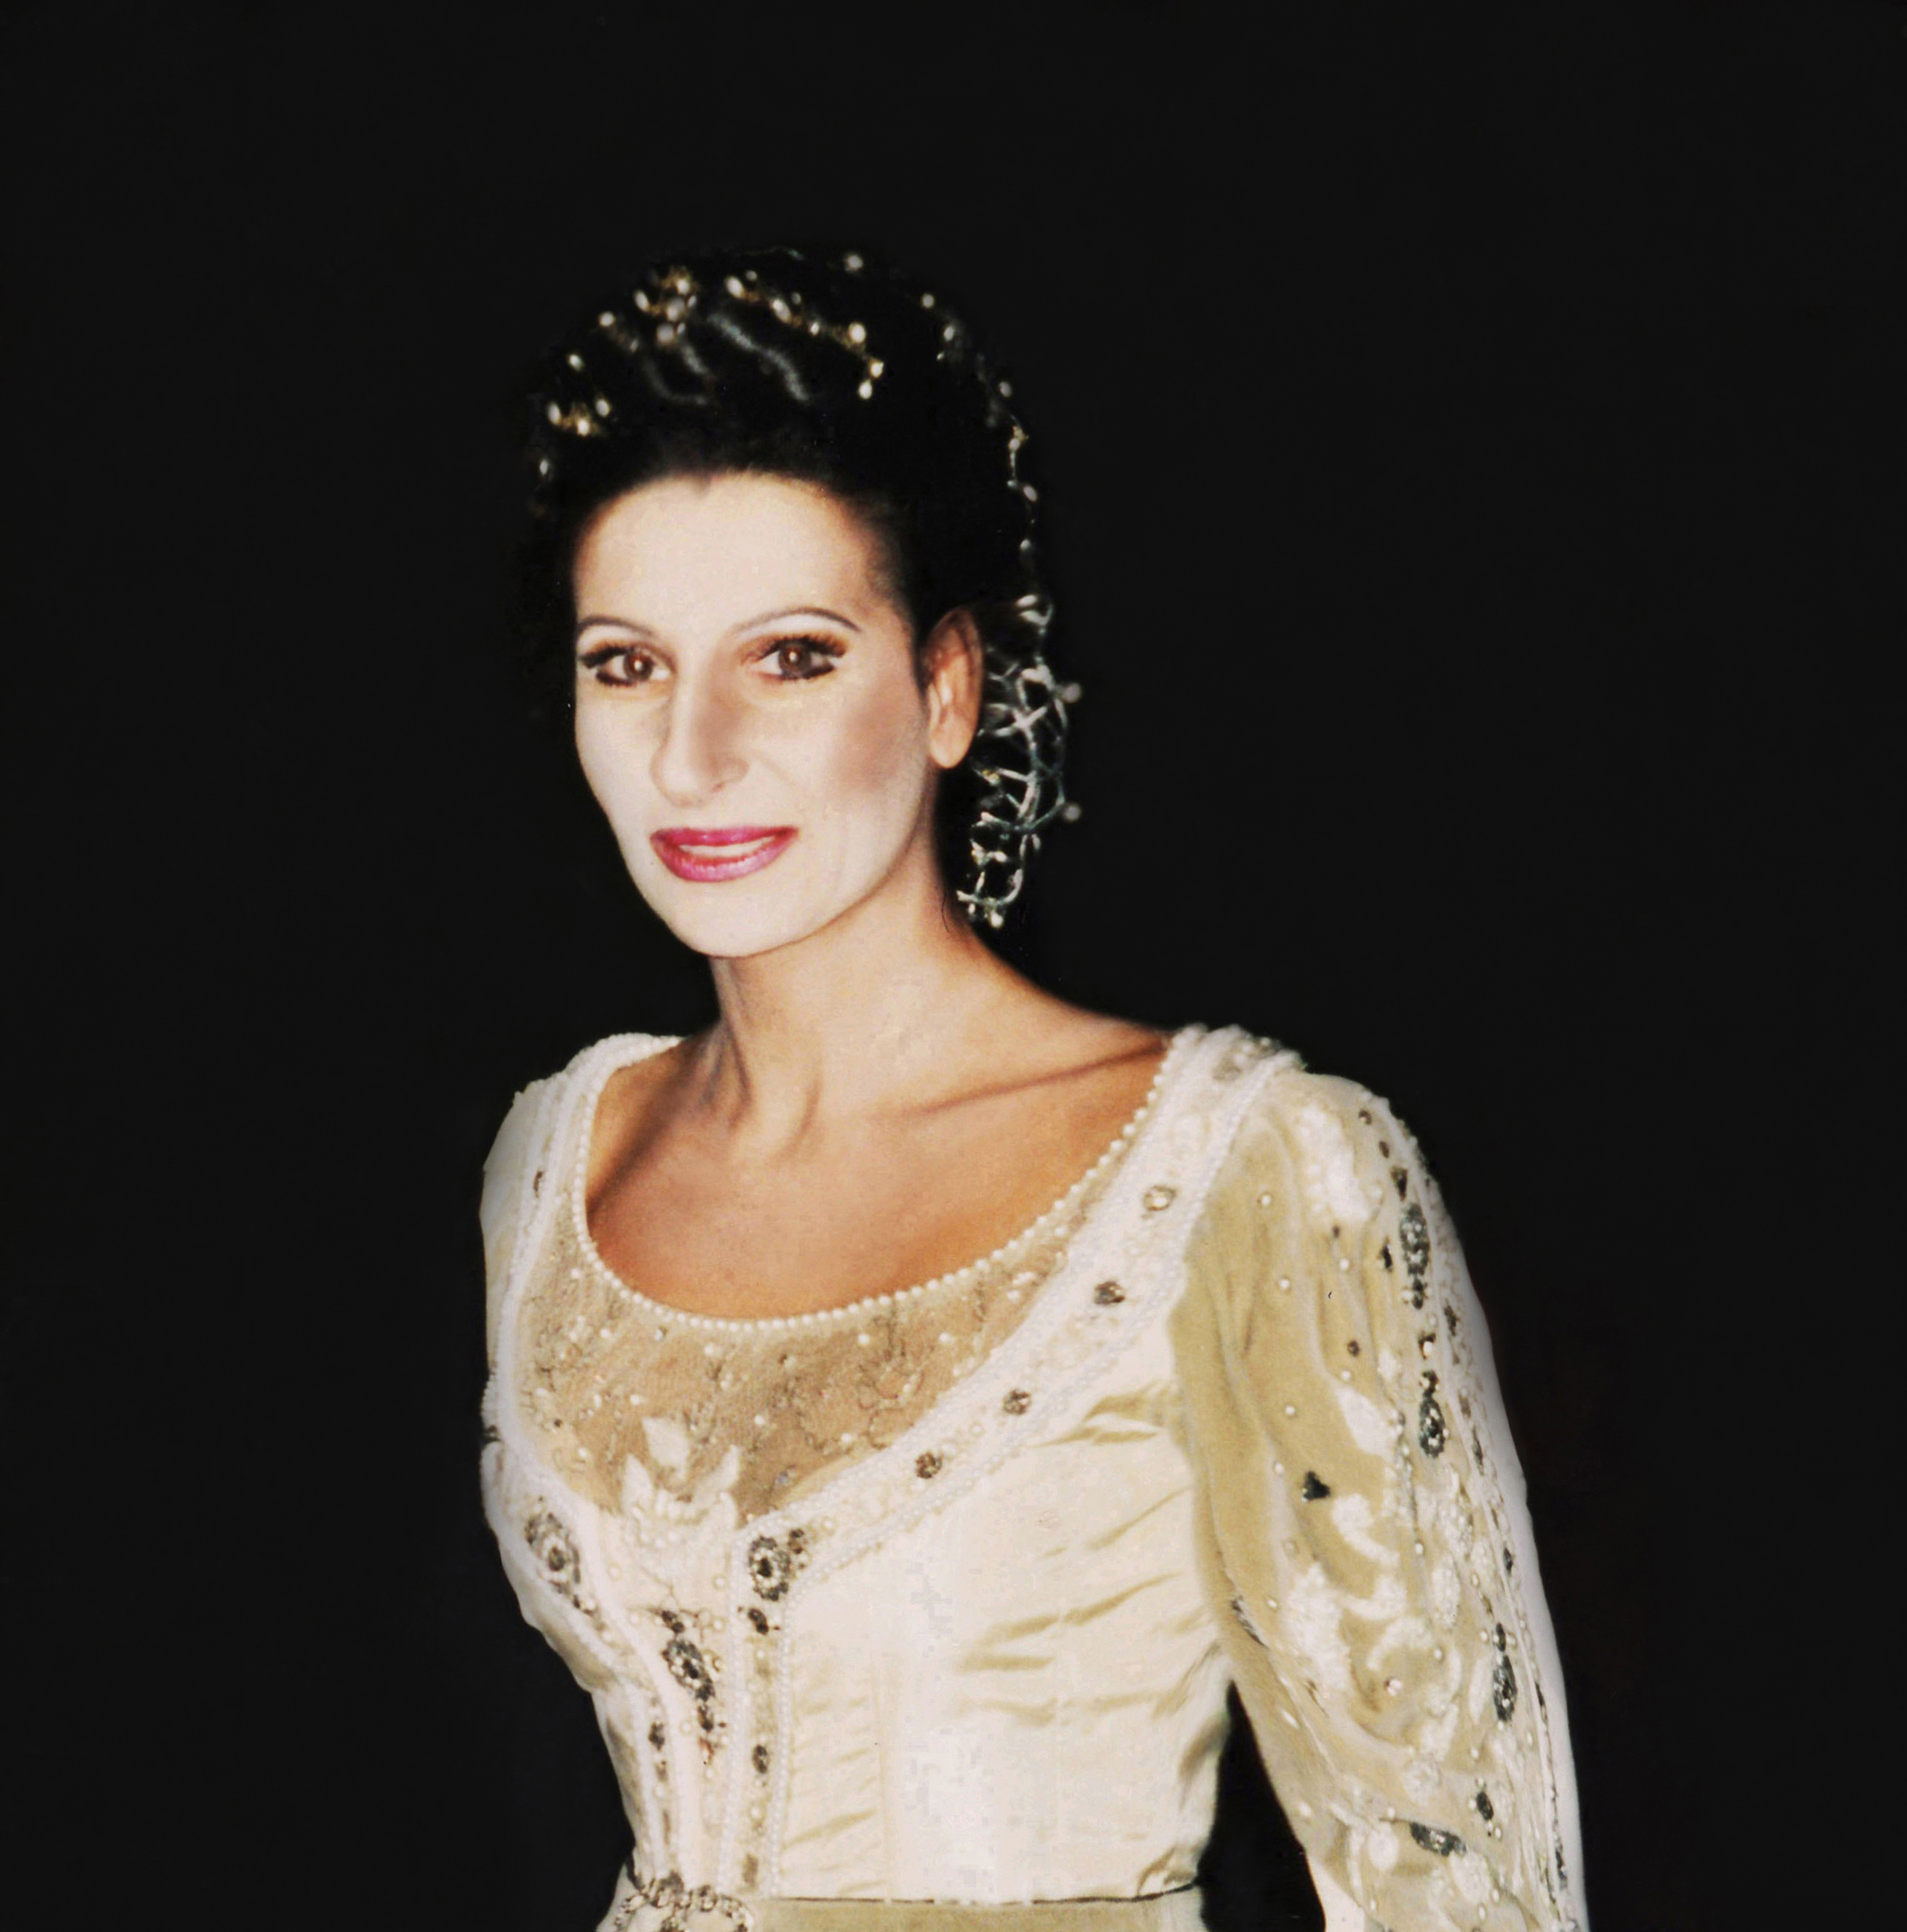 Lucia Aliberti⚘Deutsche Oper Berlin⚘Berlin⚘Opera⚘"Anna Bolena"⚘Back Stage⚘:http://www.luciaaliberti.it #luciaaliberti #deutscheoperberlin #berlin #annabolena #opera #backstage